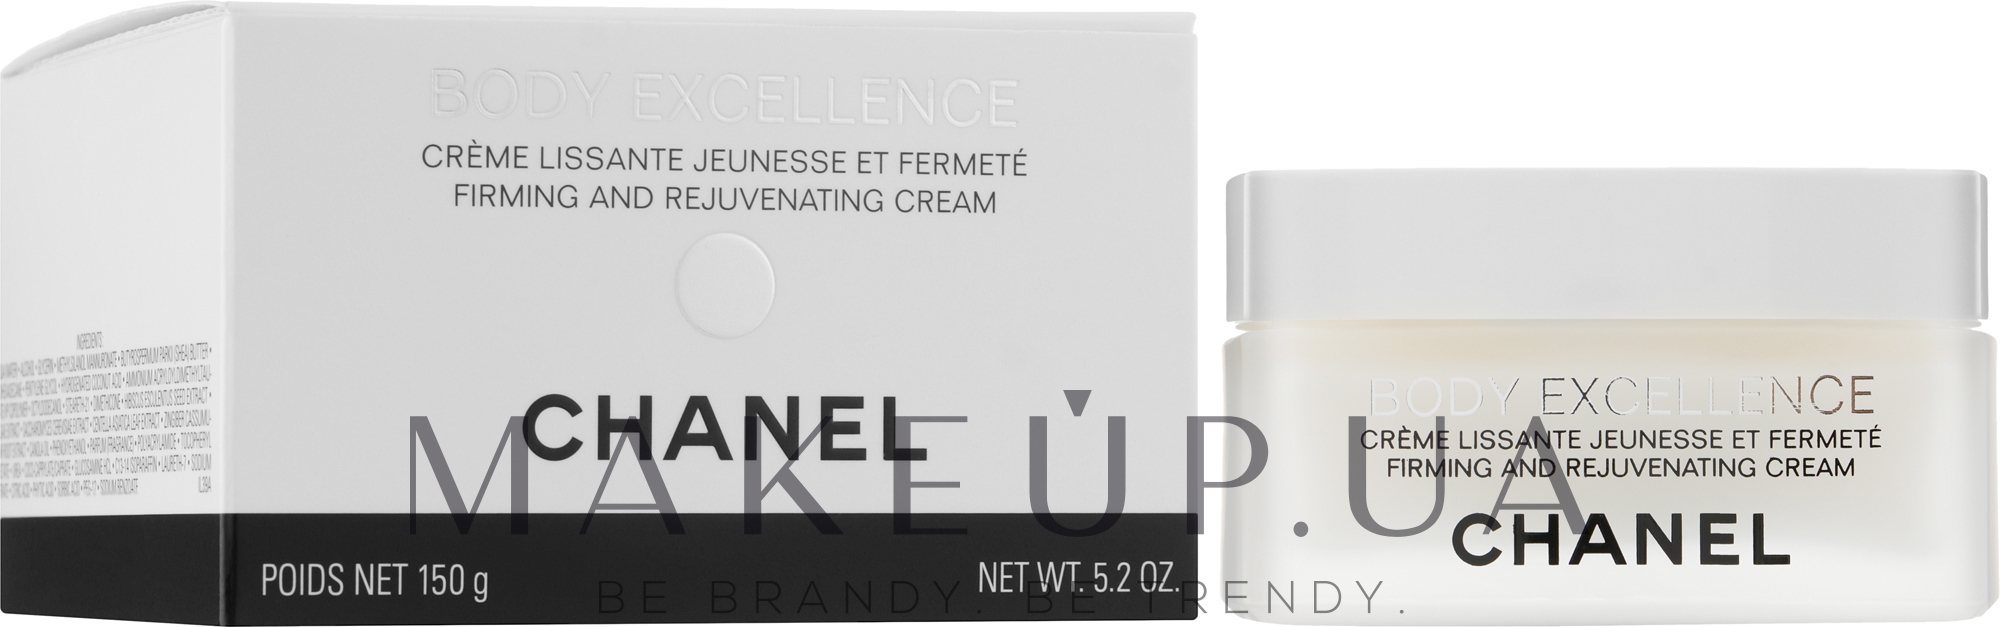 Разглаживающий и укрепляющий крем для тела - Chanel Body Excellence Body Firming Cream — фото 150g